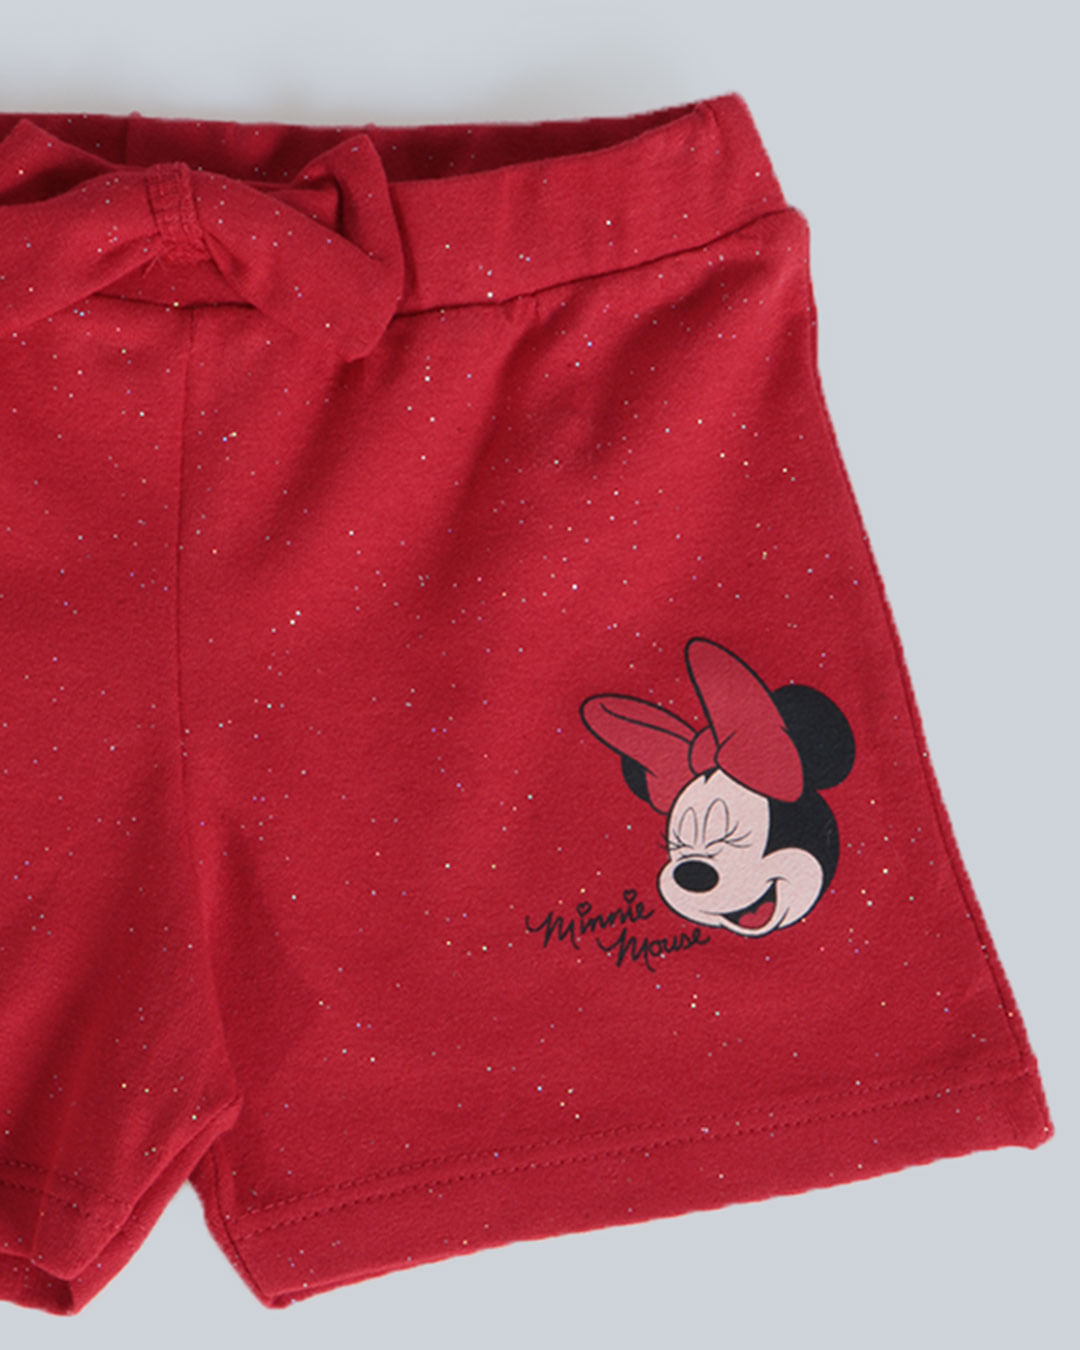 Short-Bebe-Lacinho-Estampa-Minnie-Mouse-Disney-Vermelho